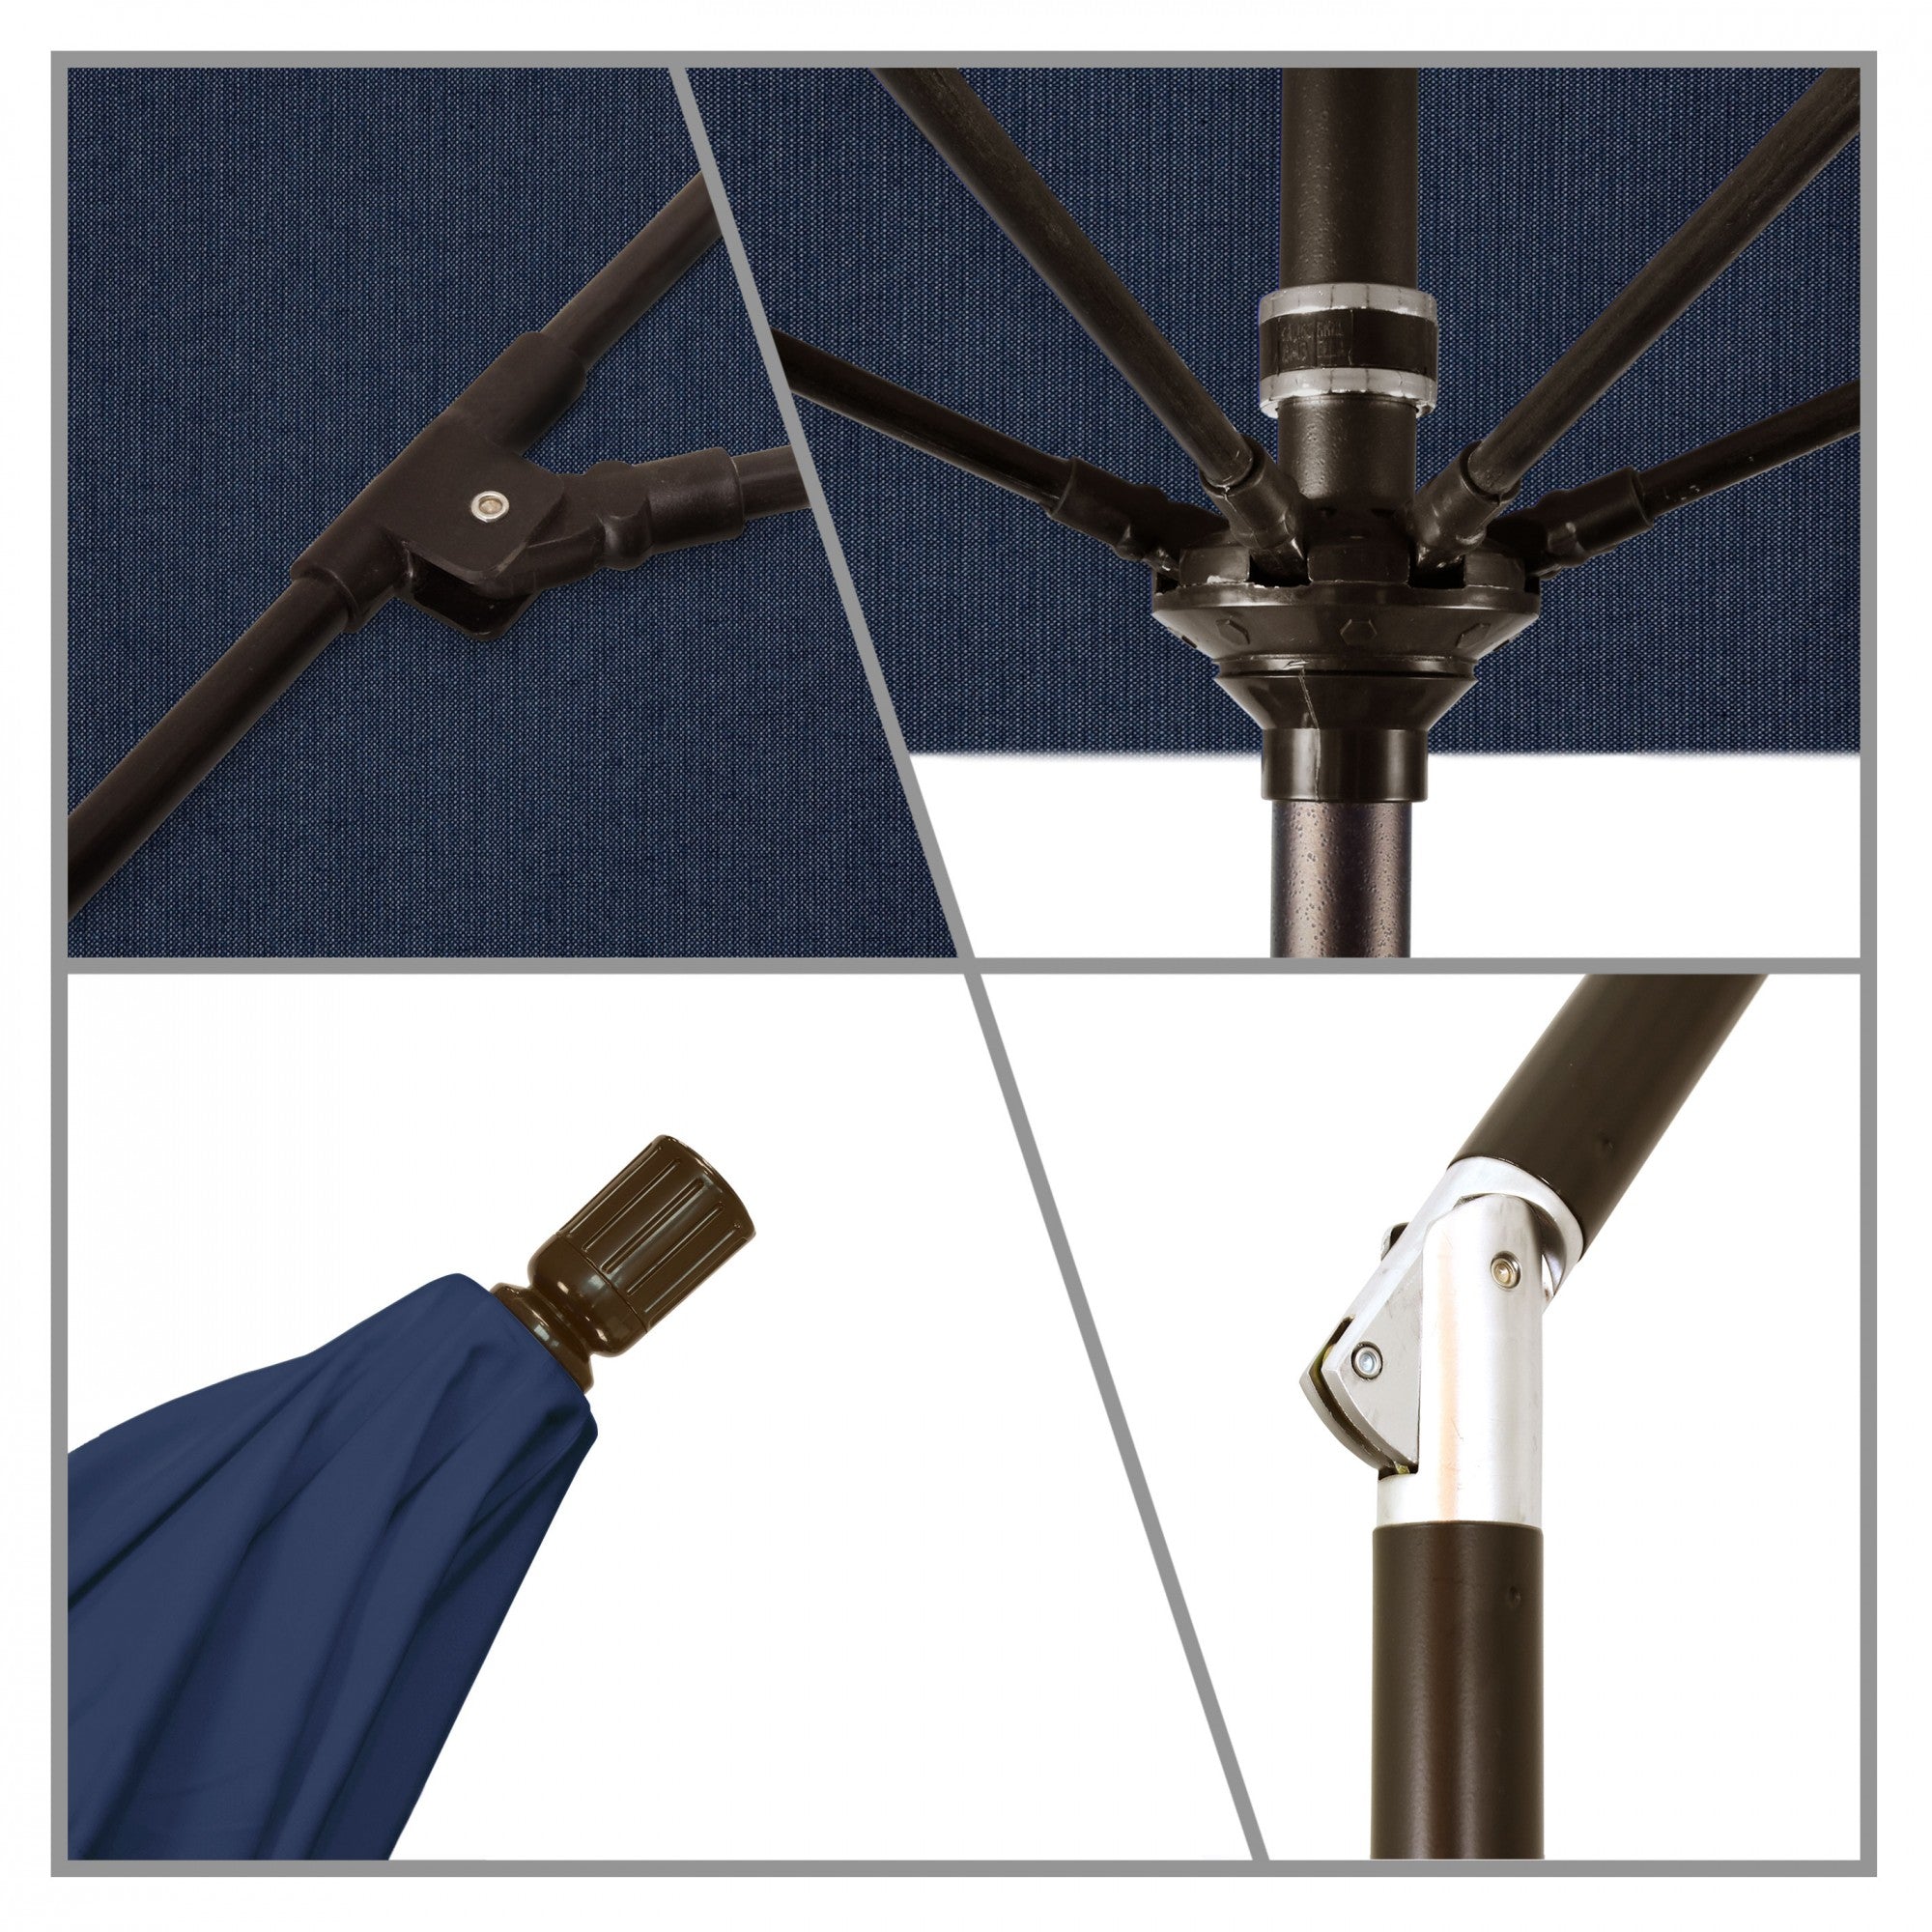 California Umbrella - 9' - Patio Umbrella Umbrella - Aluminum Pole - Spectrum Indigo - Sunbrella  - GSCUF908117-48080